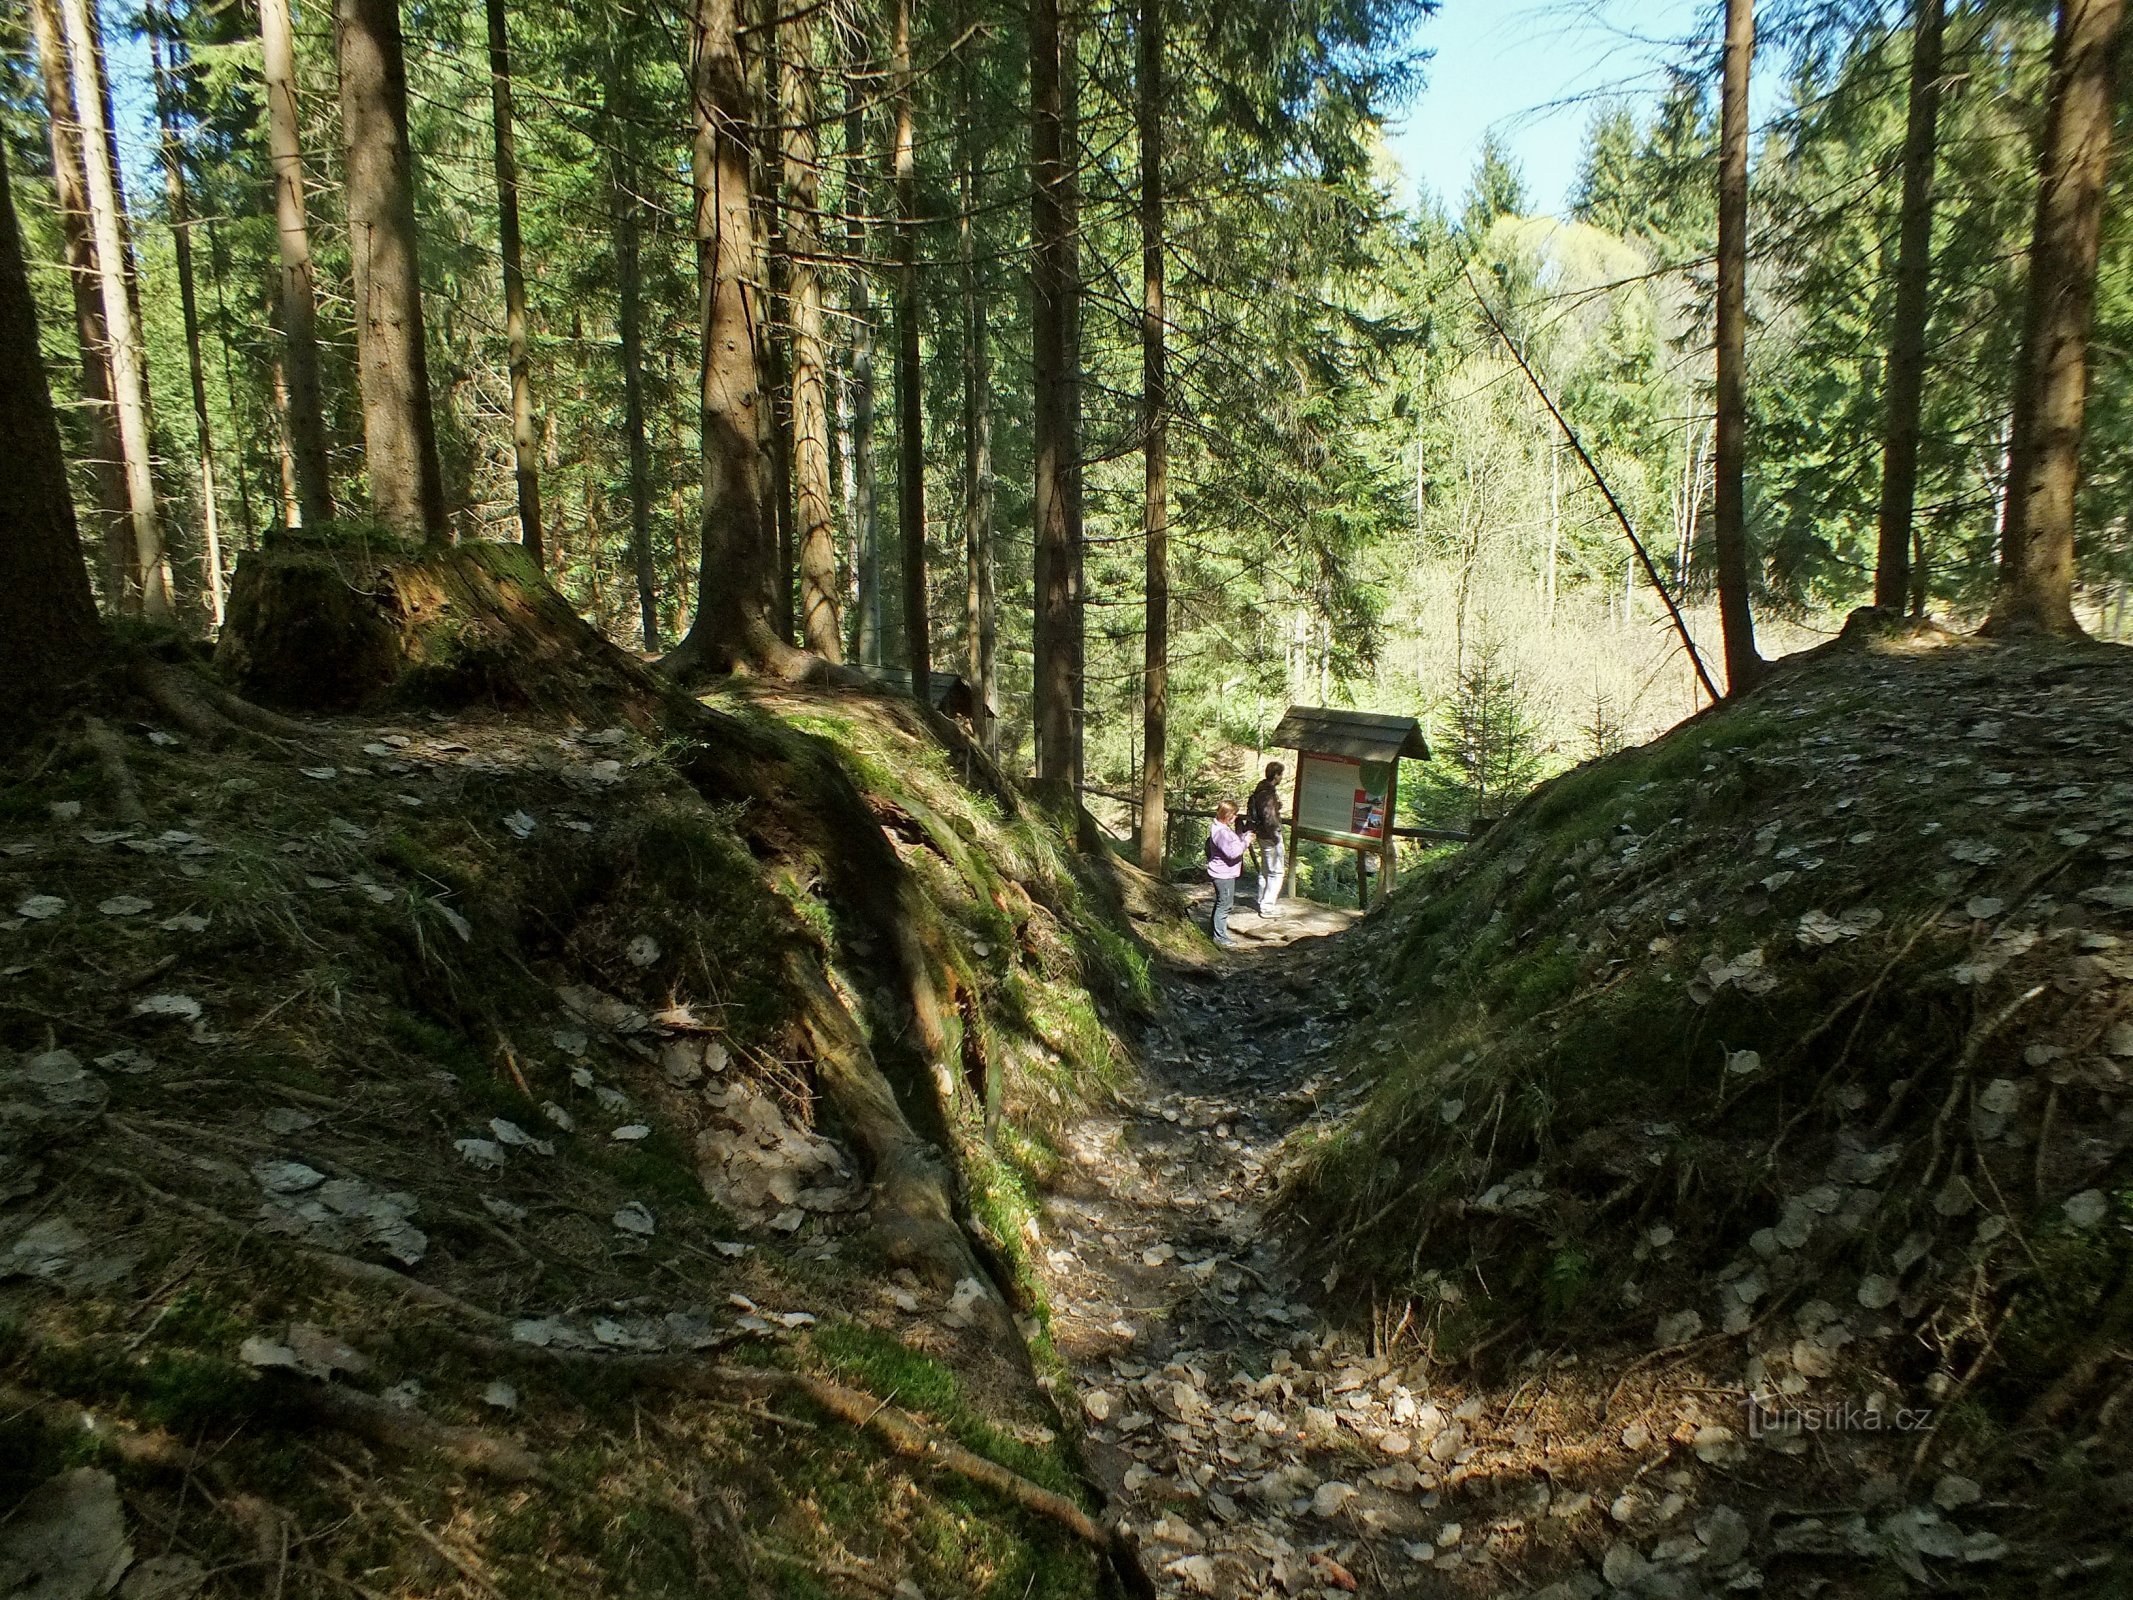 Ущелье, в котором находится самая восточная точка Чехии